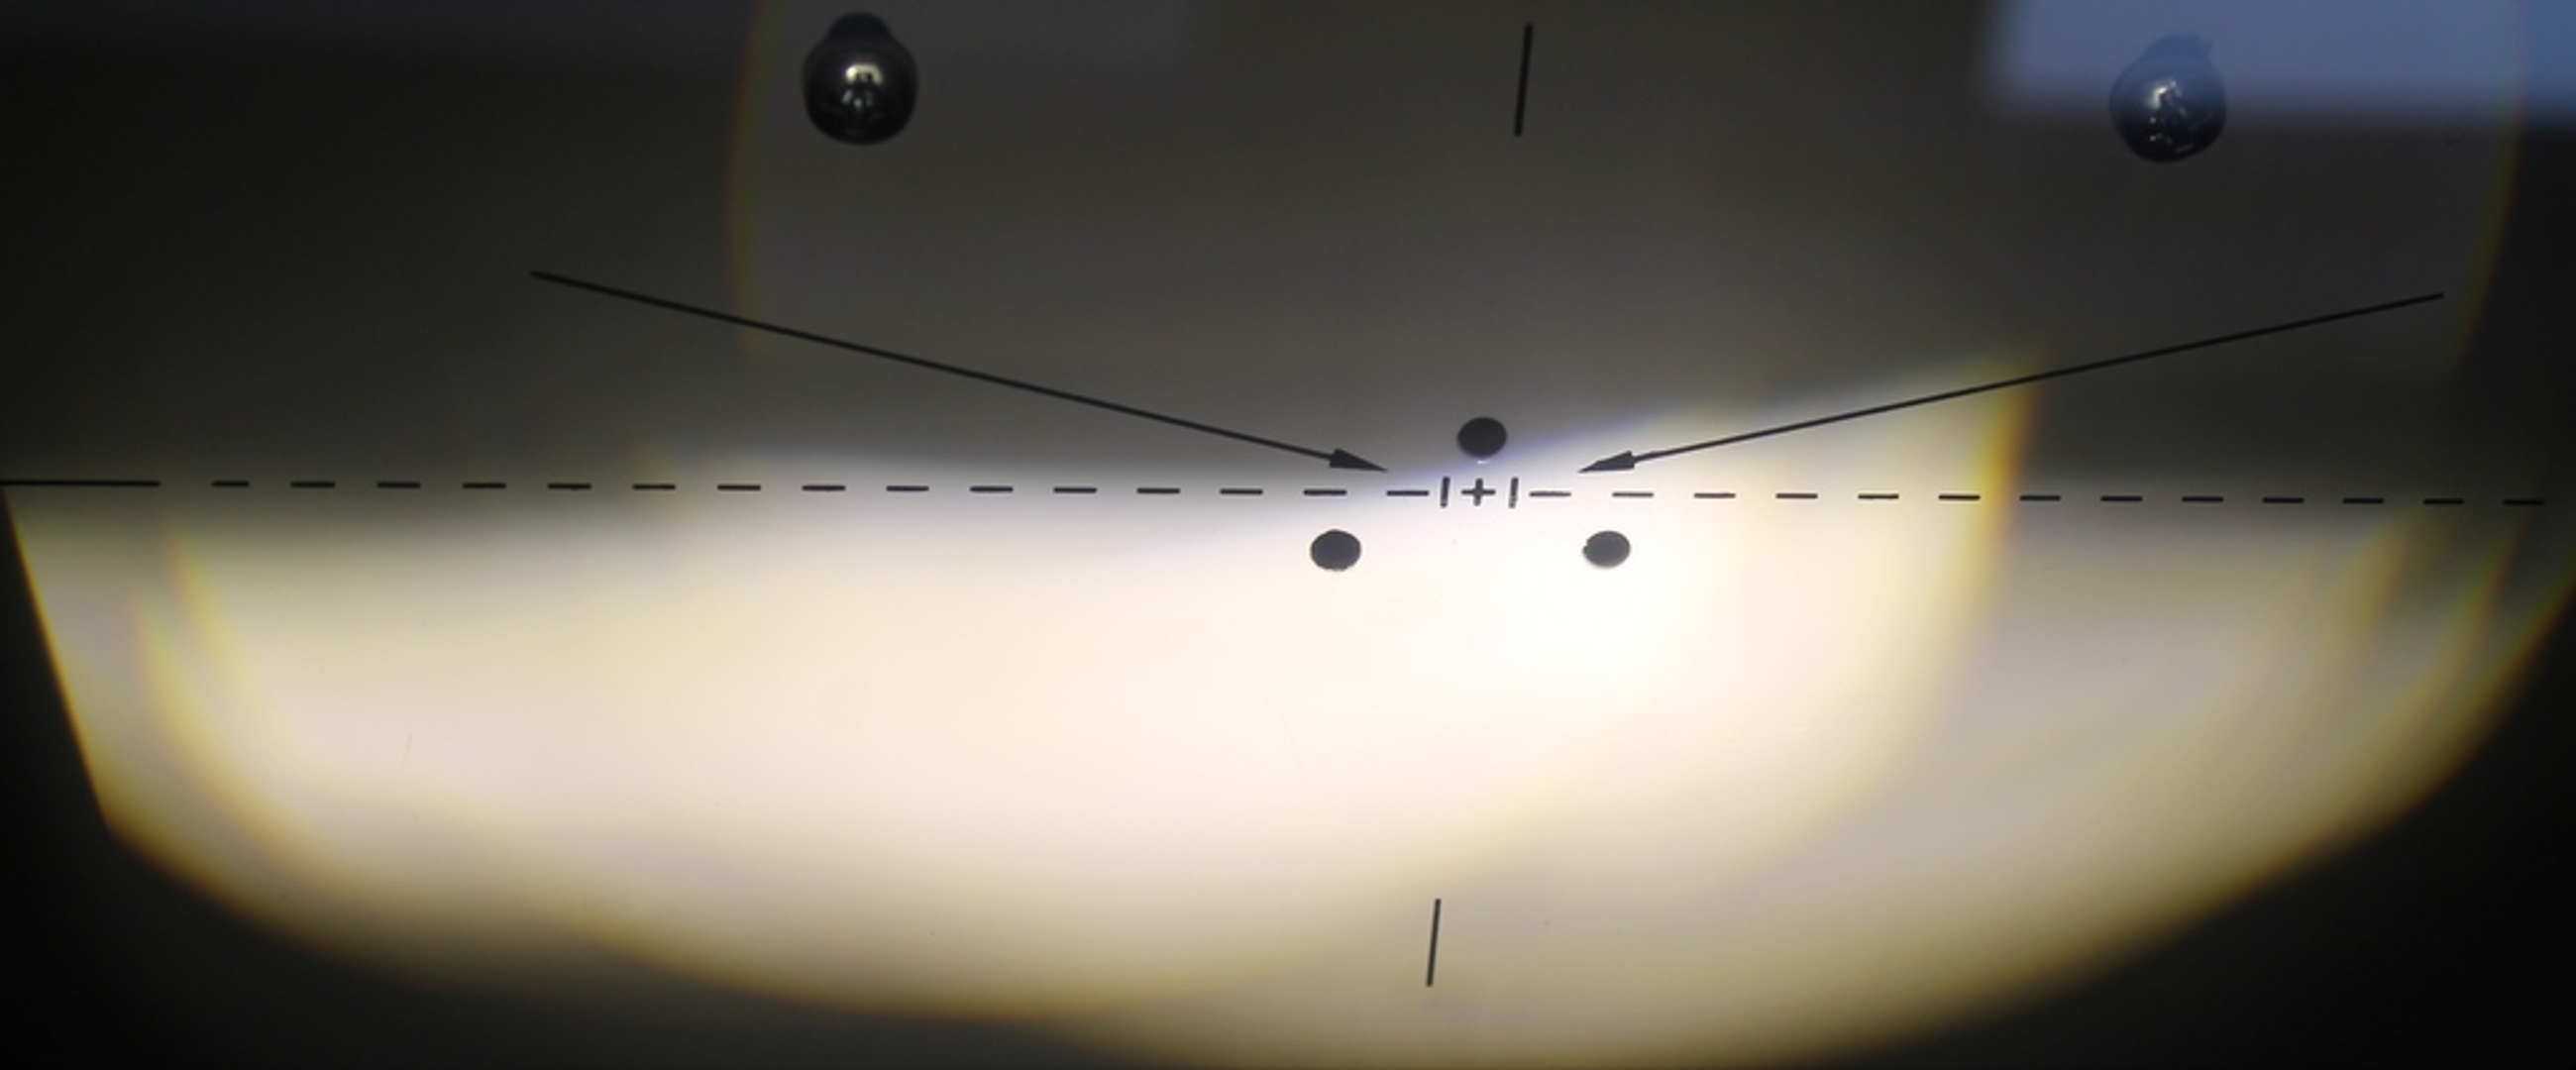 Ispravan izgled i visina snopa prednjeg svjetla promatran na uređaju za kontrolu geometrije glavnih svjetala - regloskopu